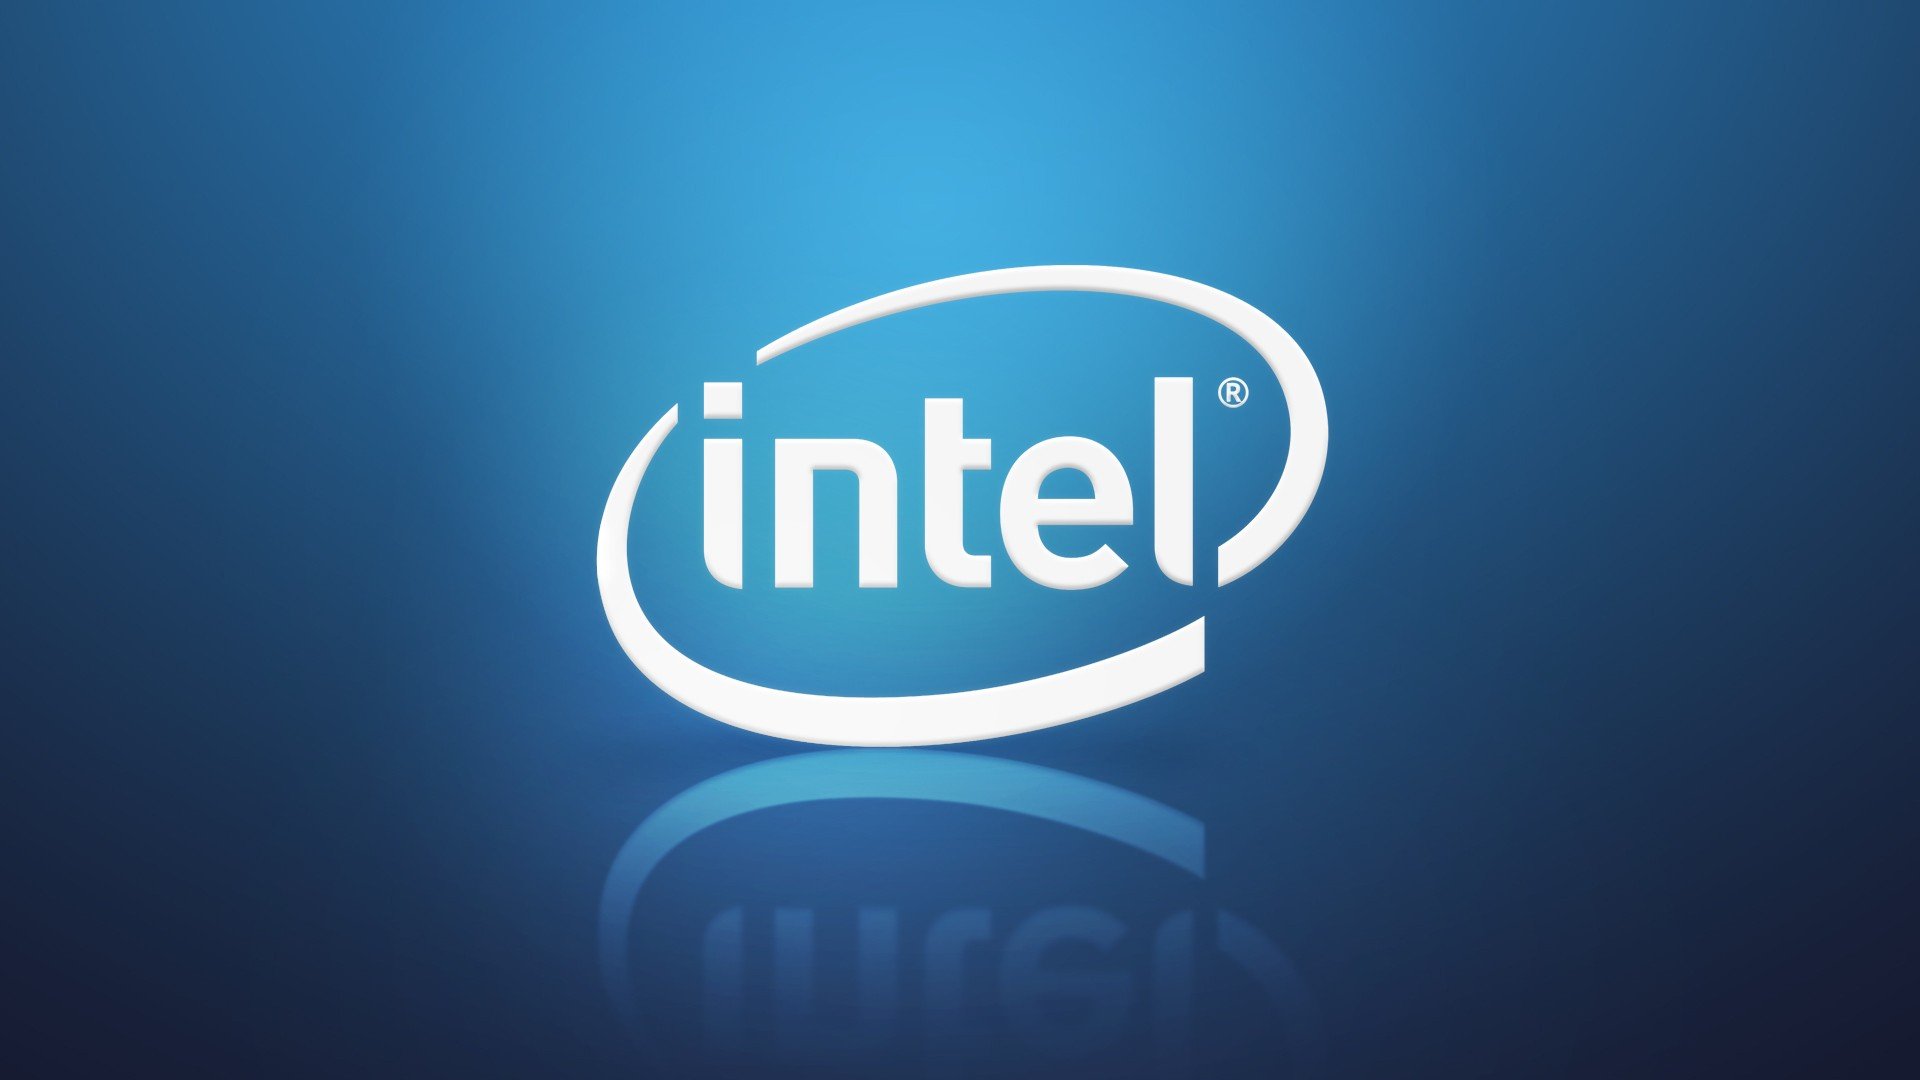 Intel, Technology, Computer, CPU Wallpaper